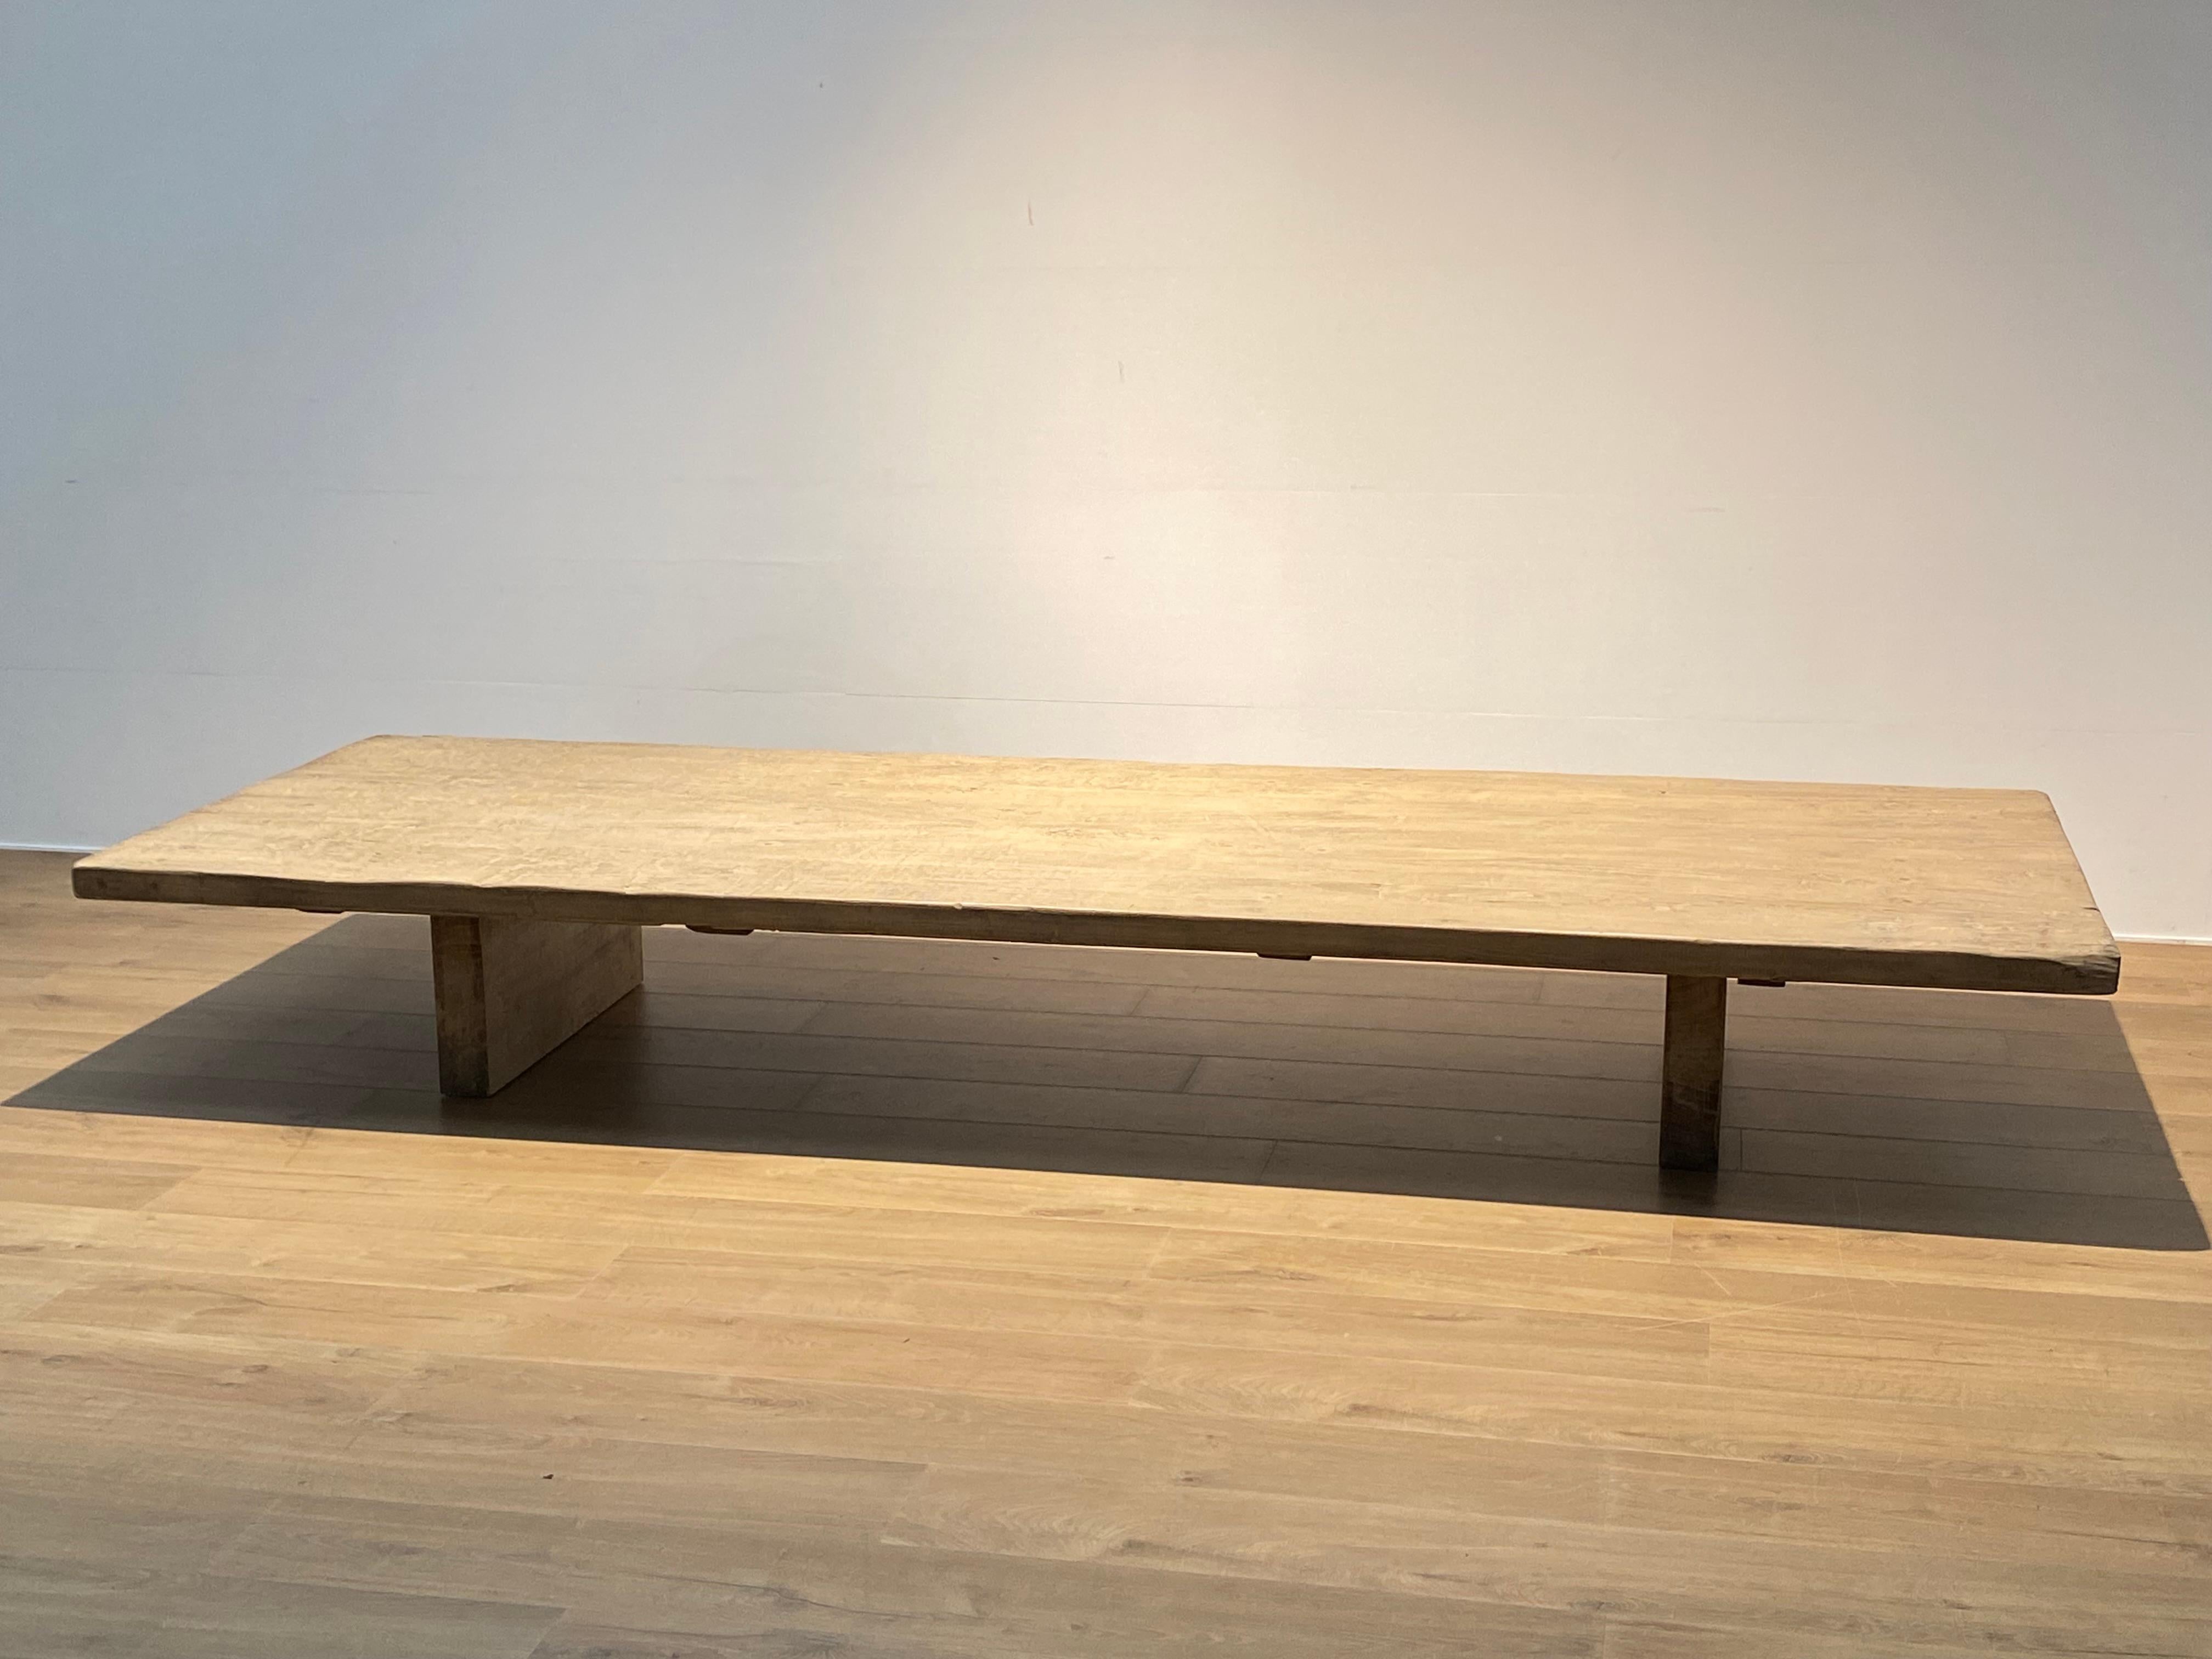 Brutalistische alte Tischplatte aus gebleichtem Ulmenholz,
die Tischplatte ist asiatisch und stammt aus der Zeit um 1960,
montiert auf 2 modernen, zeitgenössischen Füßen,
toller Glanz und Patina des gealterten Holzes